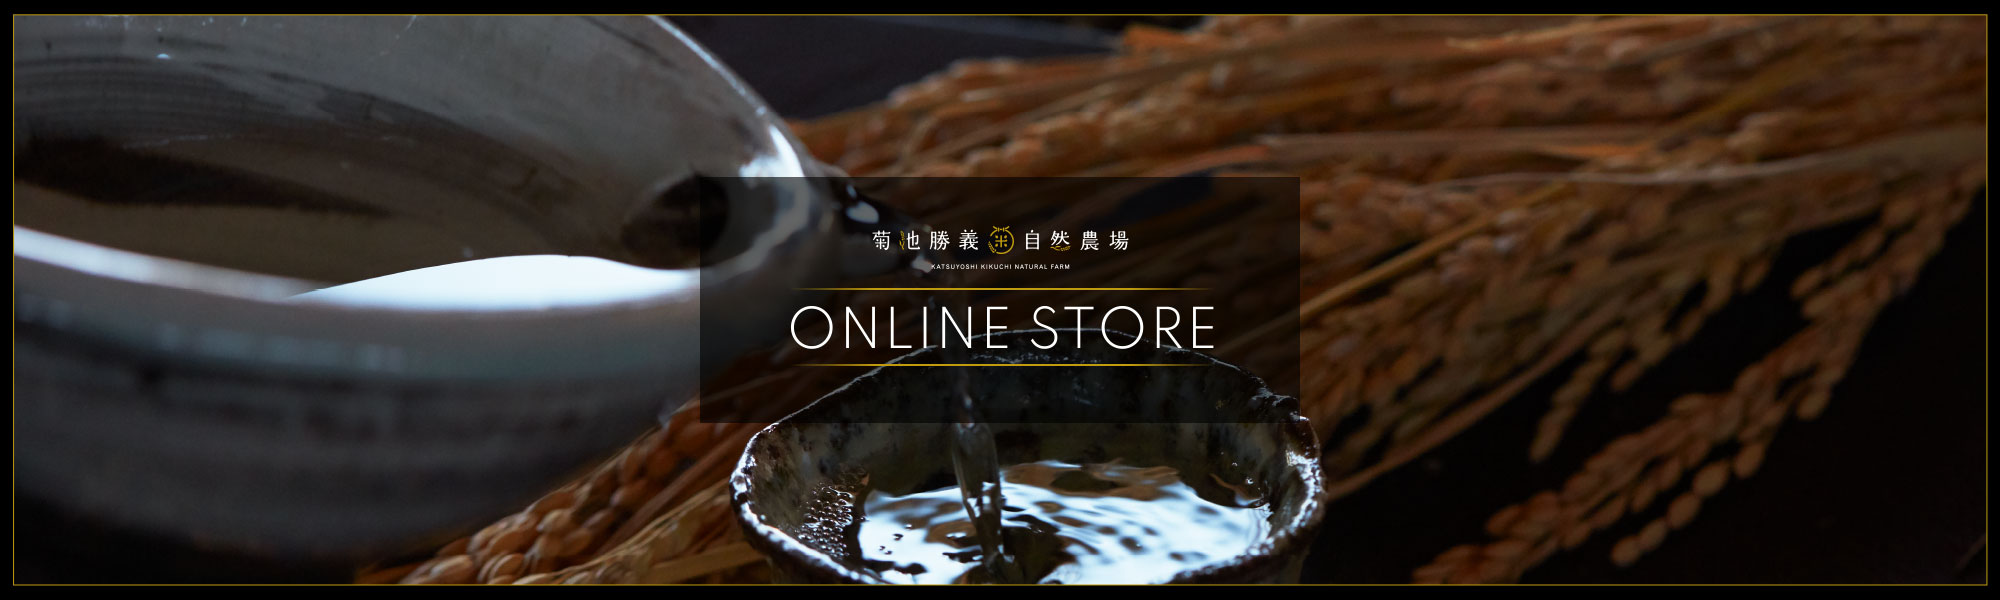 菊樹 OnlineStore